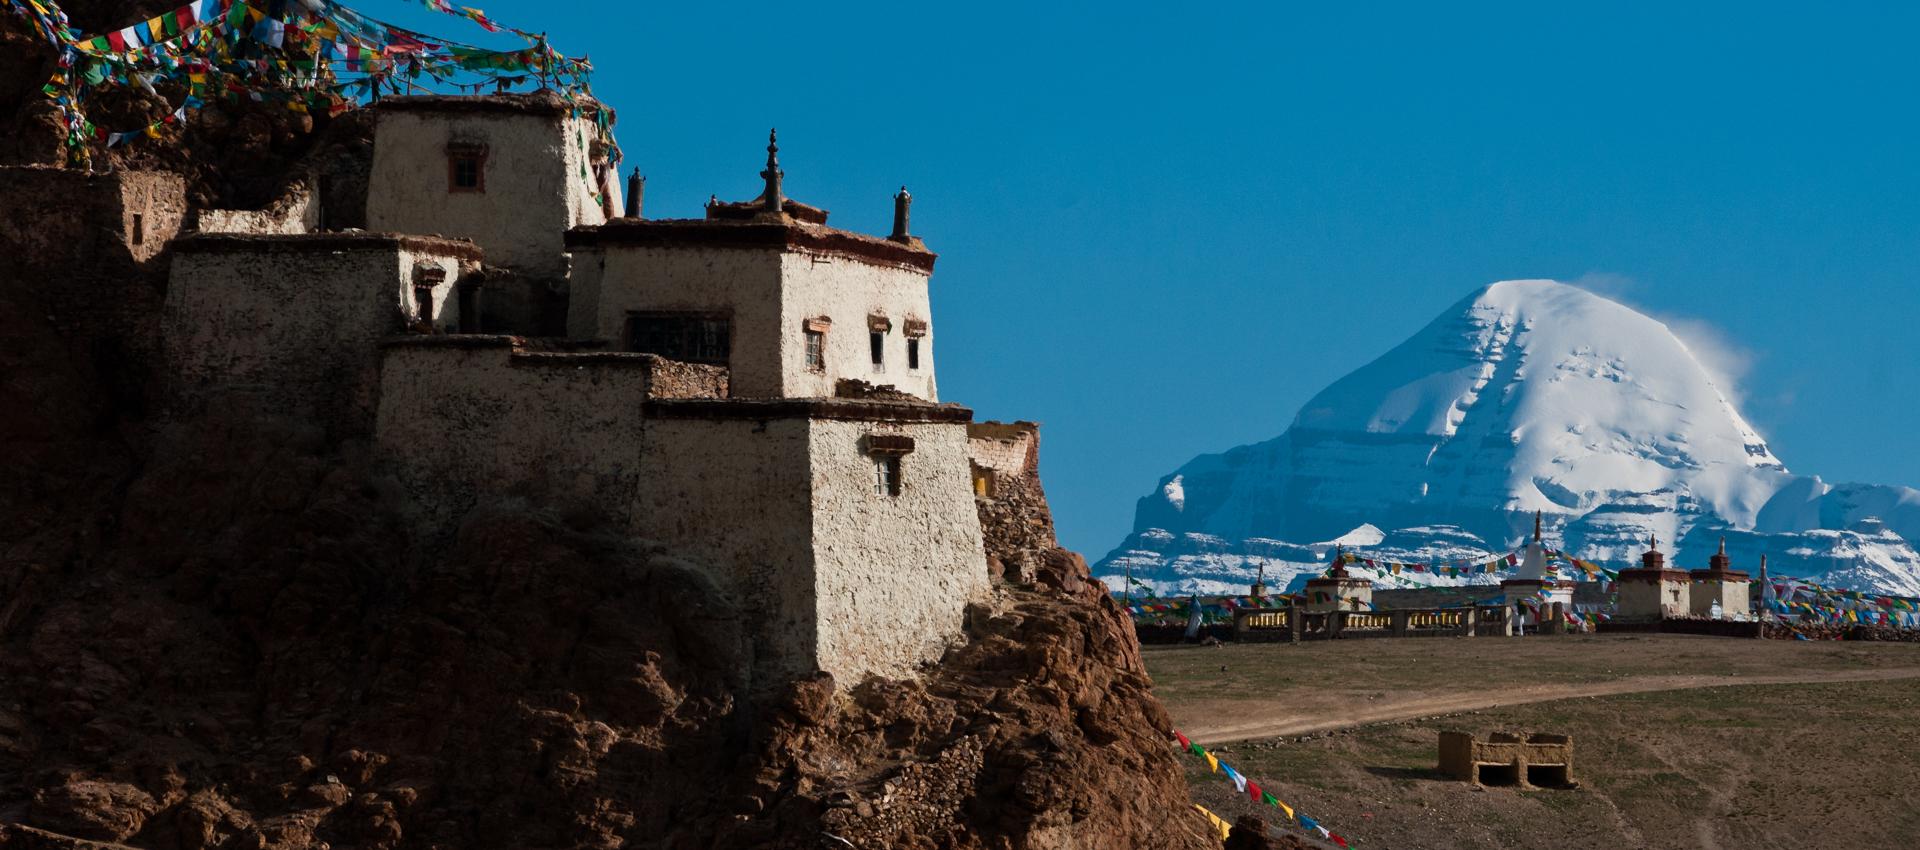 Le mont kailash au Tibet